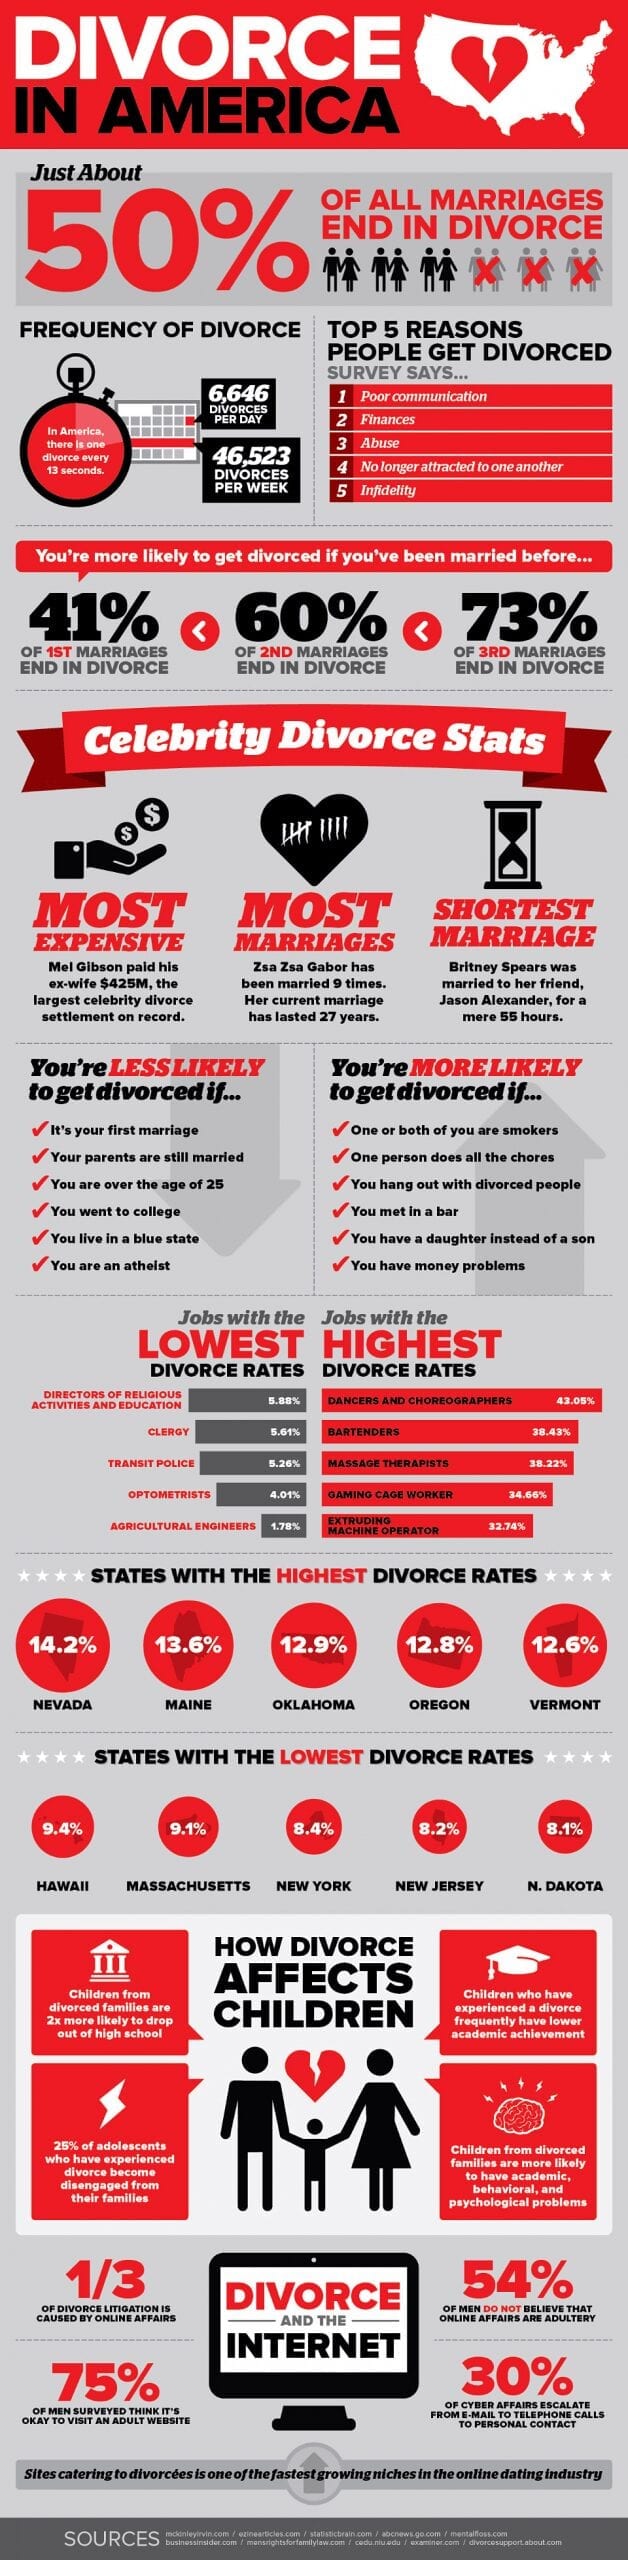 divorce in america